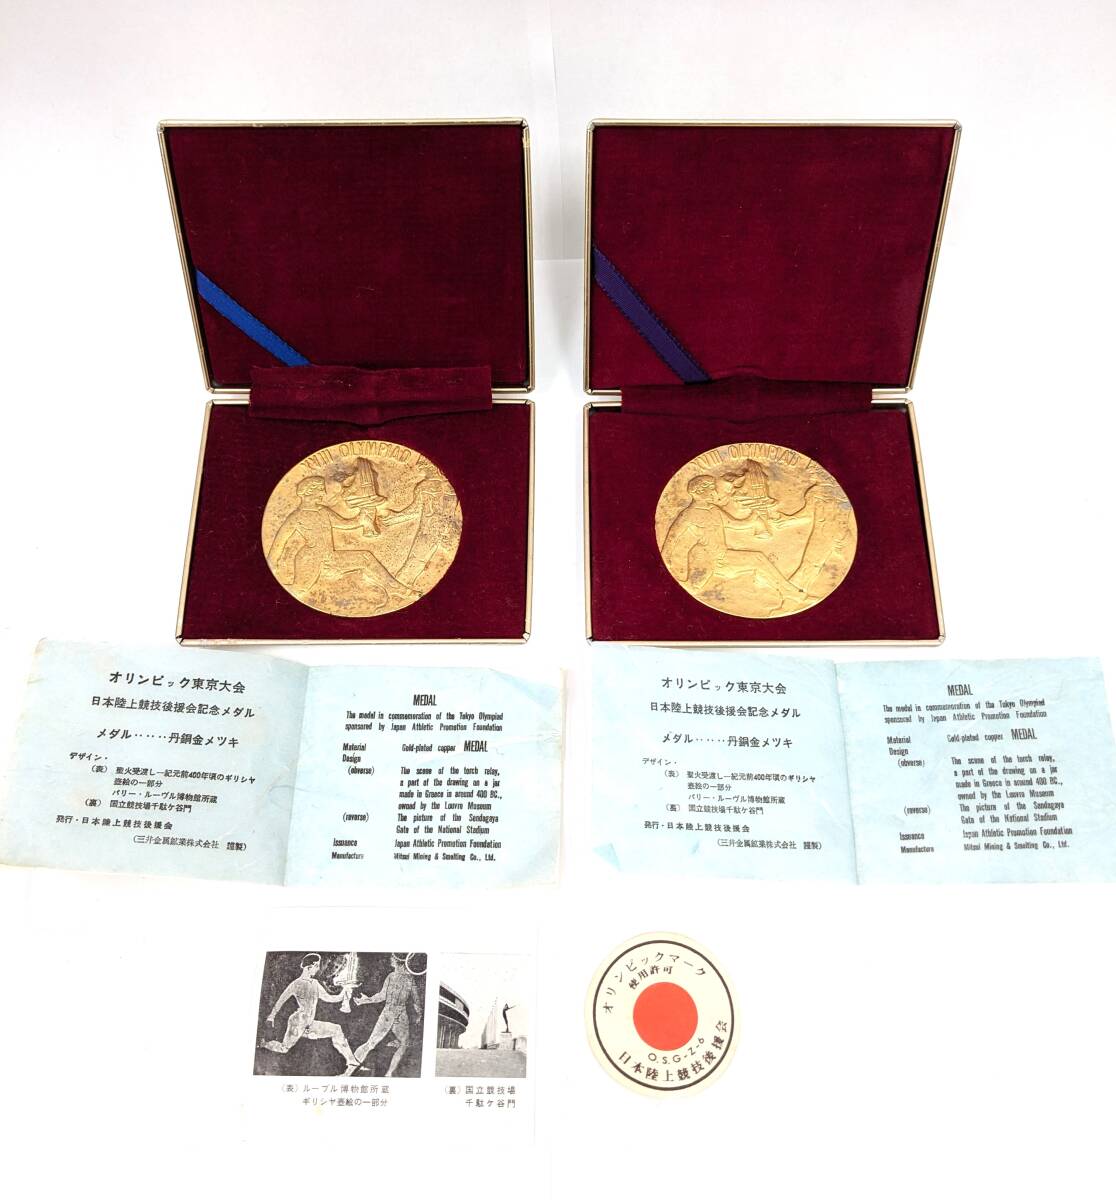 【989】1964年 東京オリンピック 記念メダル 丹銅 金メッキ 金メダル オリンピック東京大会記念 当時物 アンティーク品の画像1